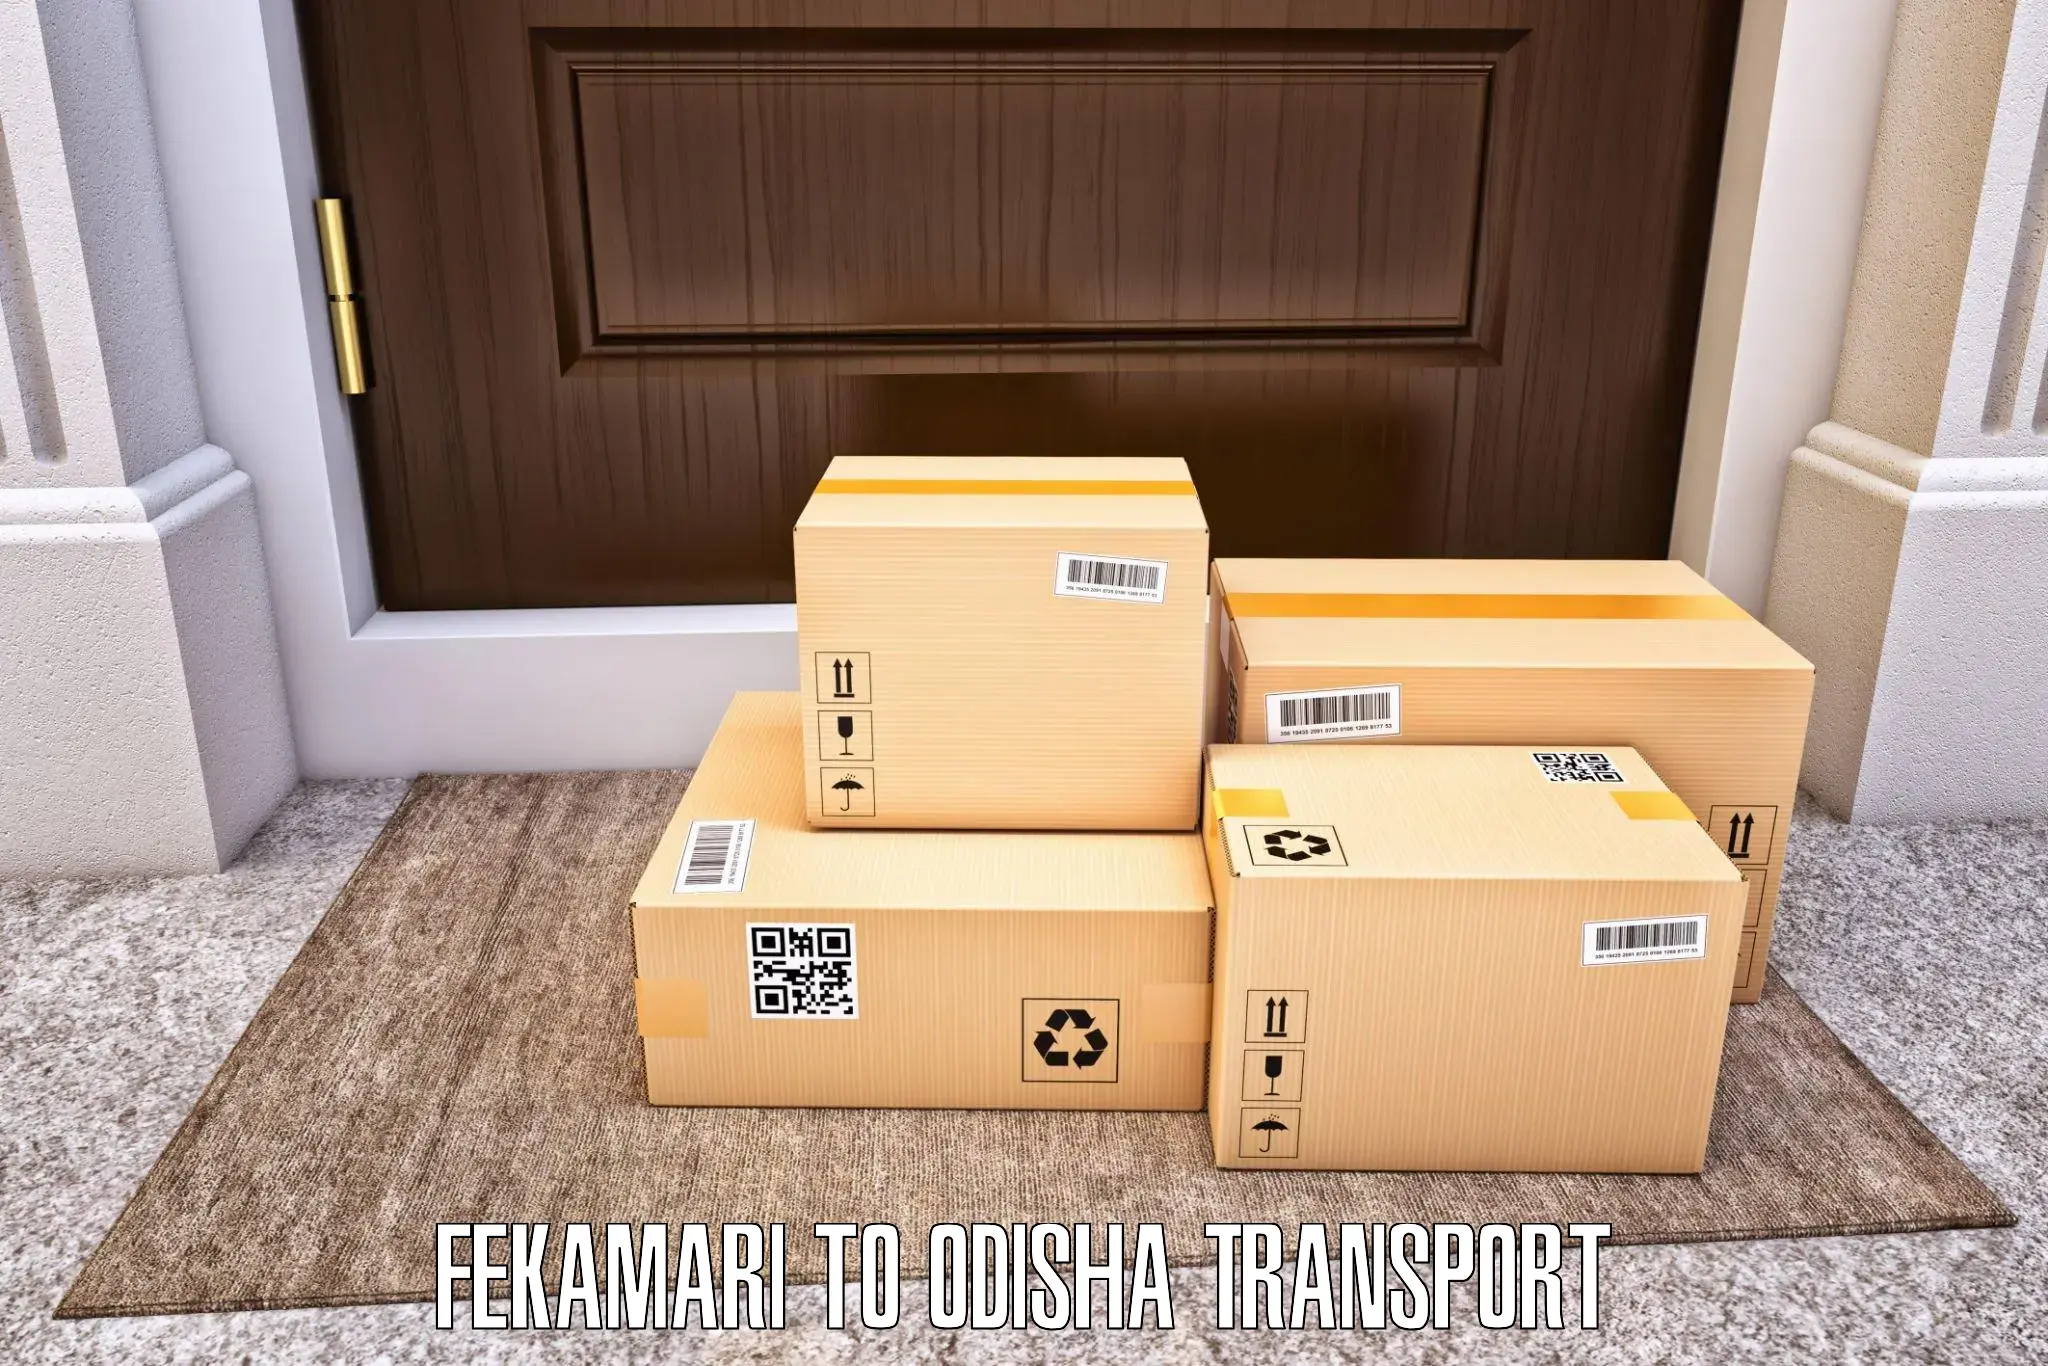 Online transport booking Fekamari to Ghuntagadia